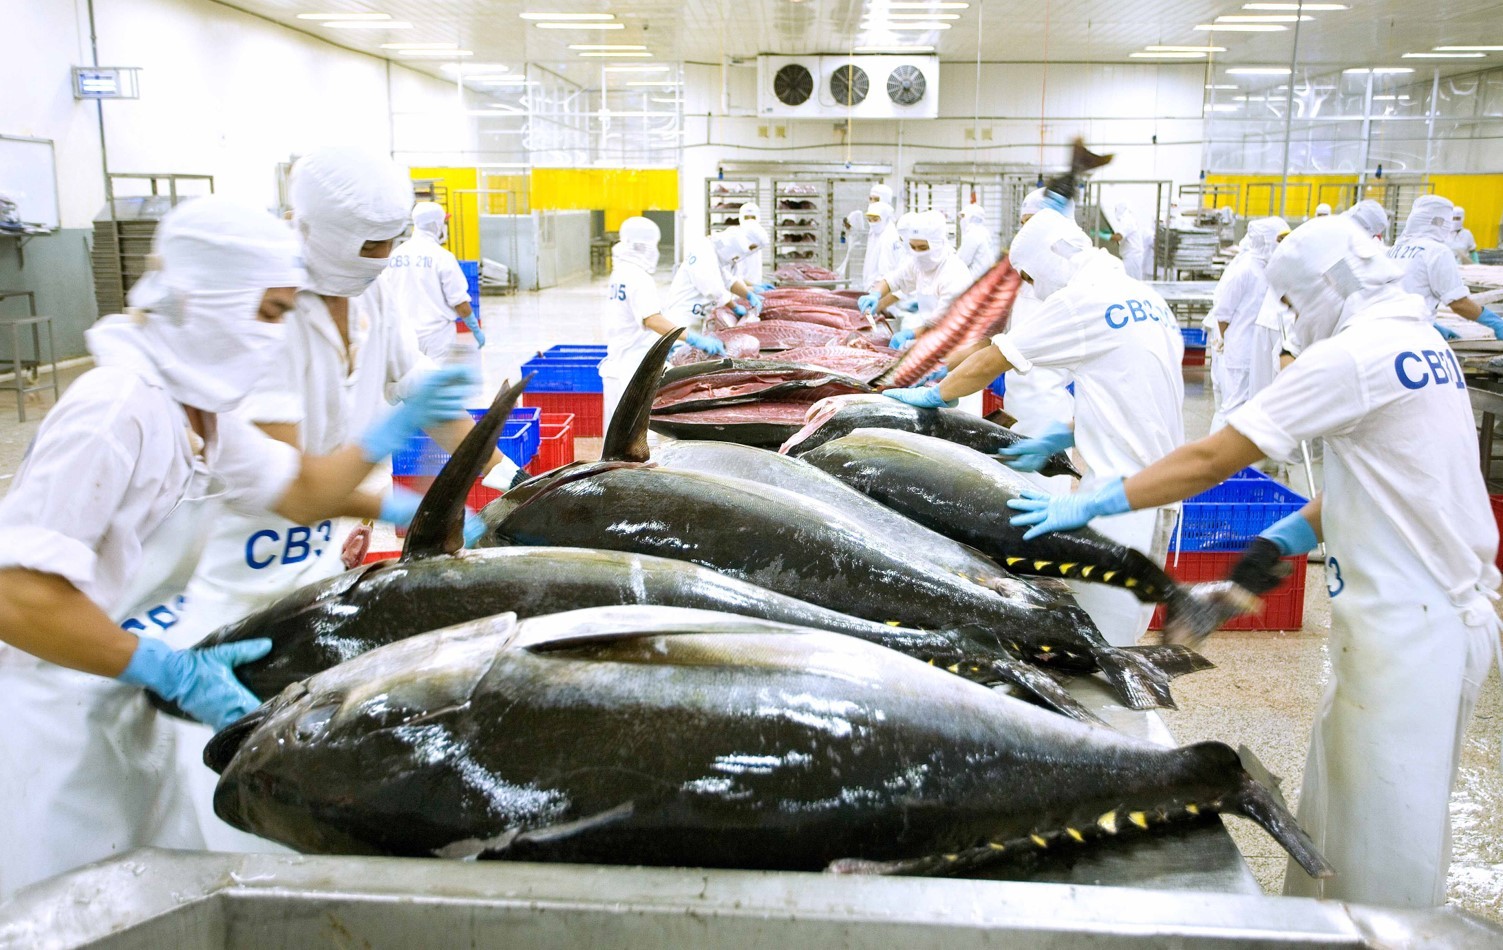 
Theo VASEP, trong bối cảnh lạm phát tại các quốc gia châu Âu ngày càng gia tăng, việc tiêu thụ cá ngừ tại khối thị trường này trong thời gian tới vẫn tiếp tục gia tăng do nhiều nguyên nhân, đặc biệt là với các sản phẩm cá ngừ đóng hộp
